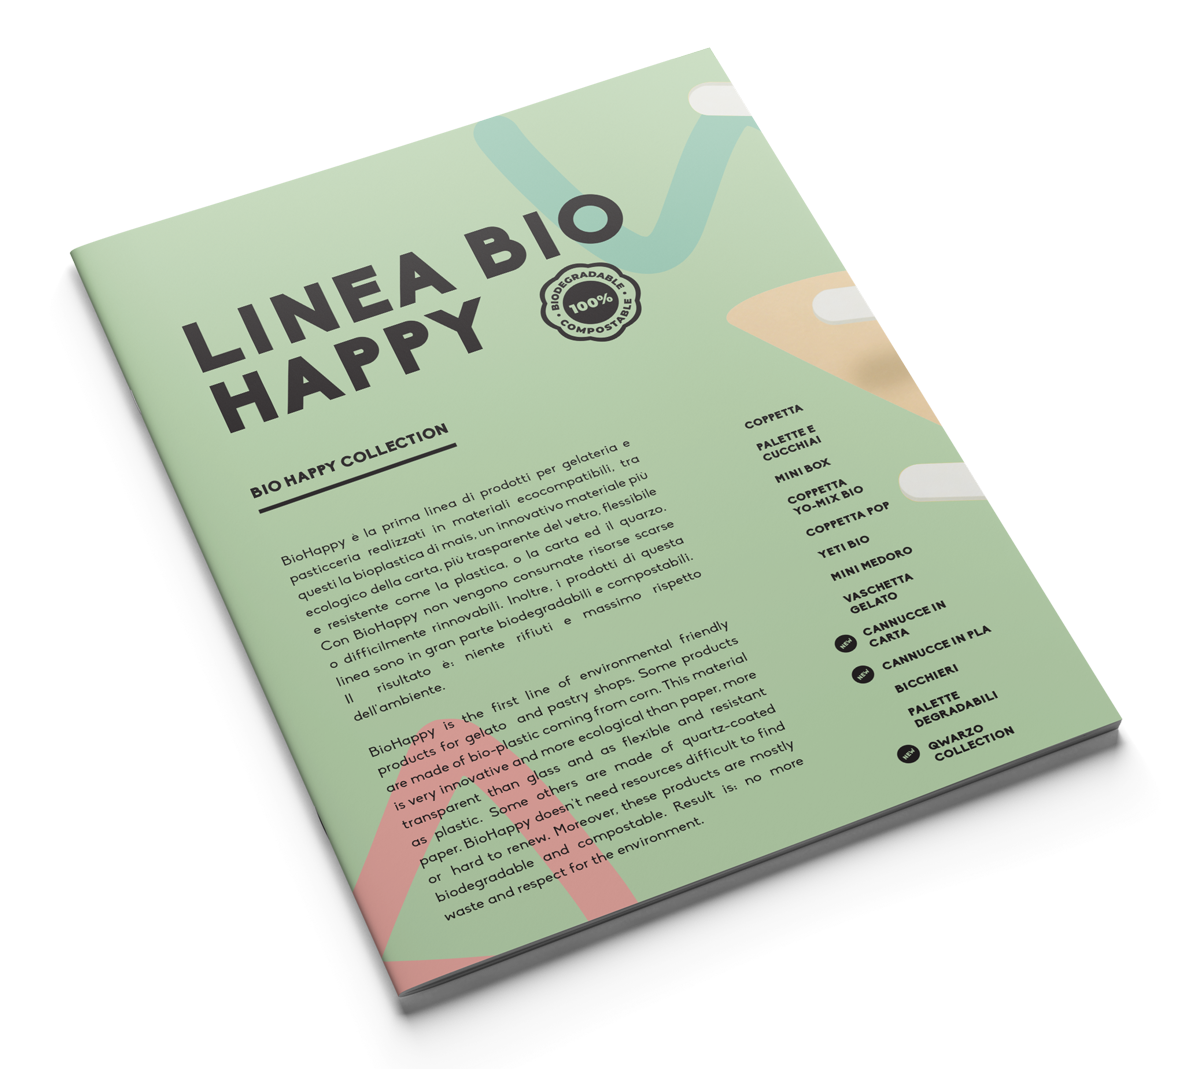 ALCAS-Linea-Bio-Happy-Mini-Catalog-2023